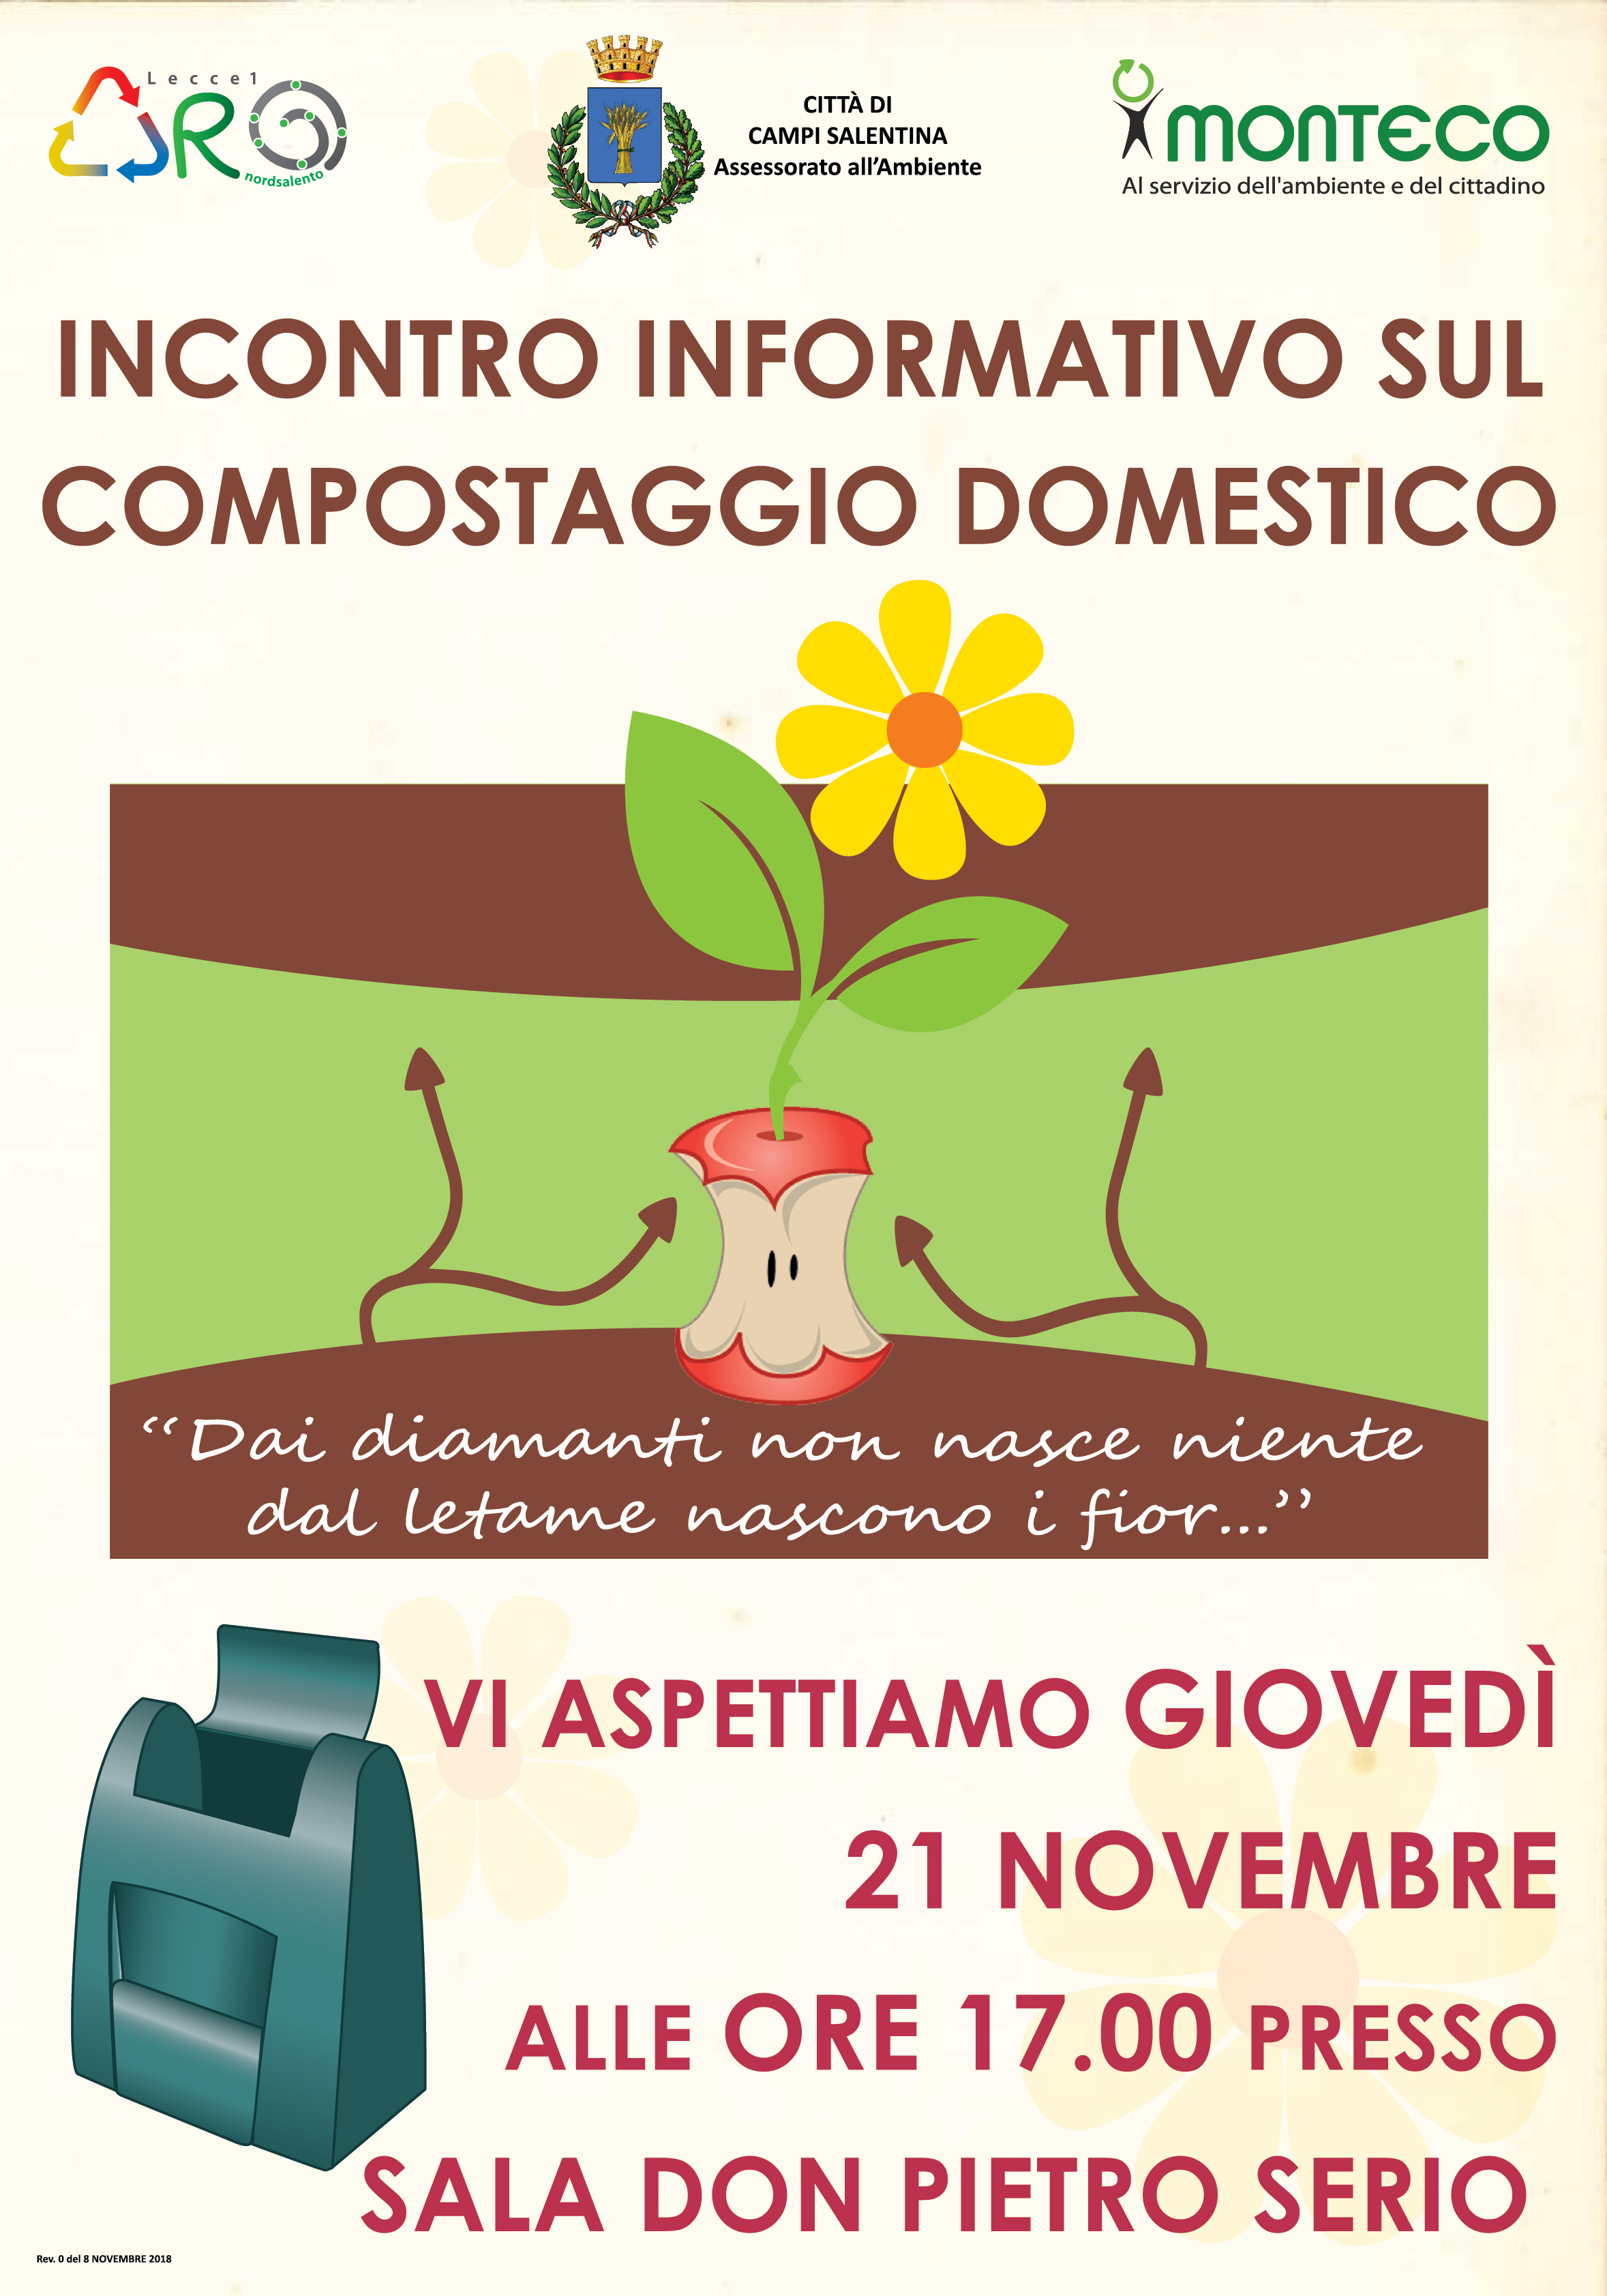 Campi Salentina: Incontro informativo sul compostaggio domestico